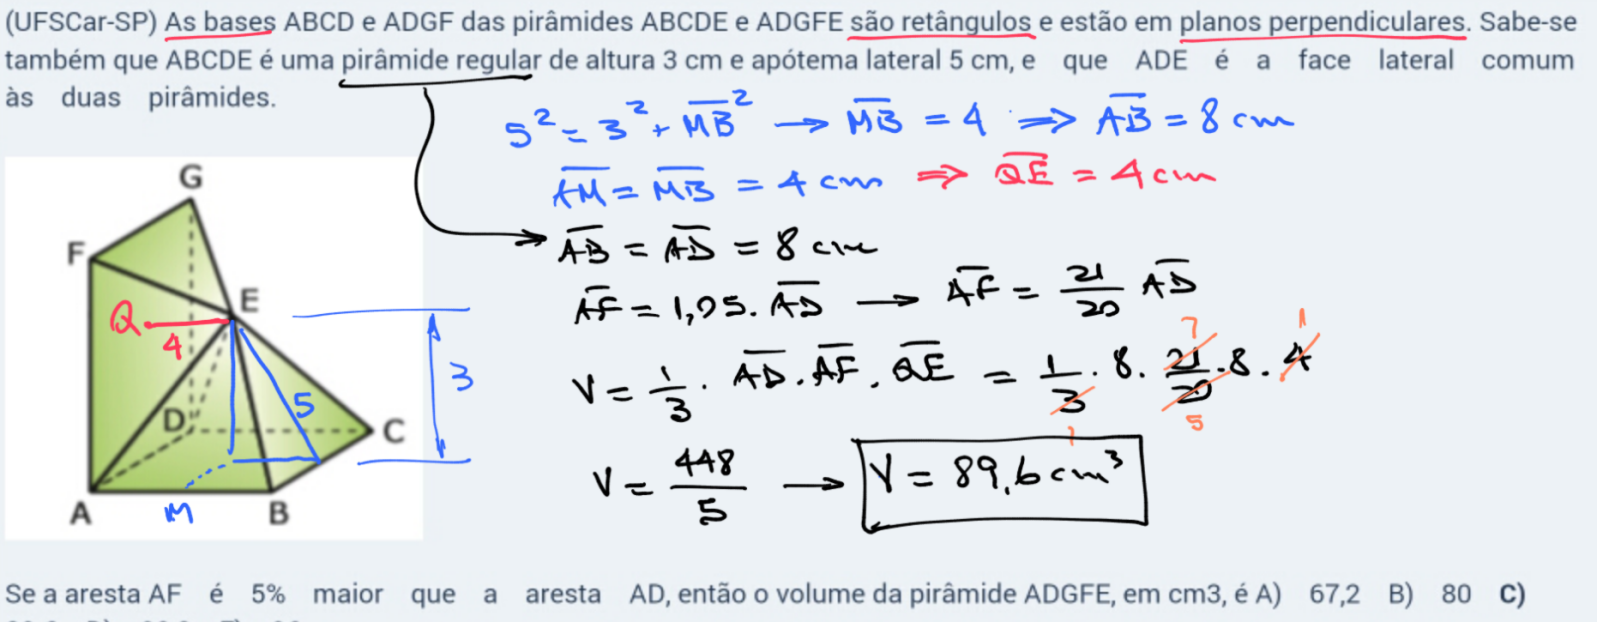 (UFSCar-SP) As bases ABCD e ADGF das pirâmide I4l0lc